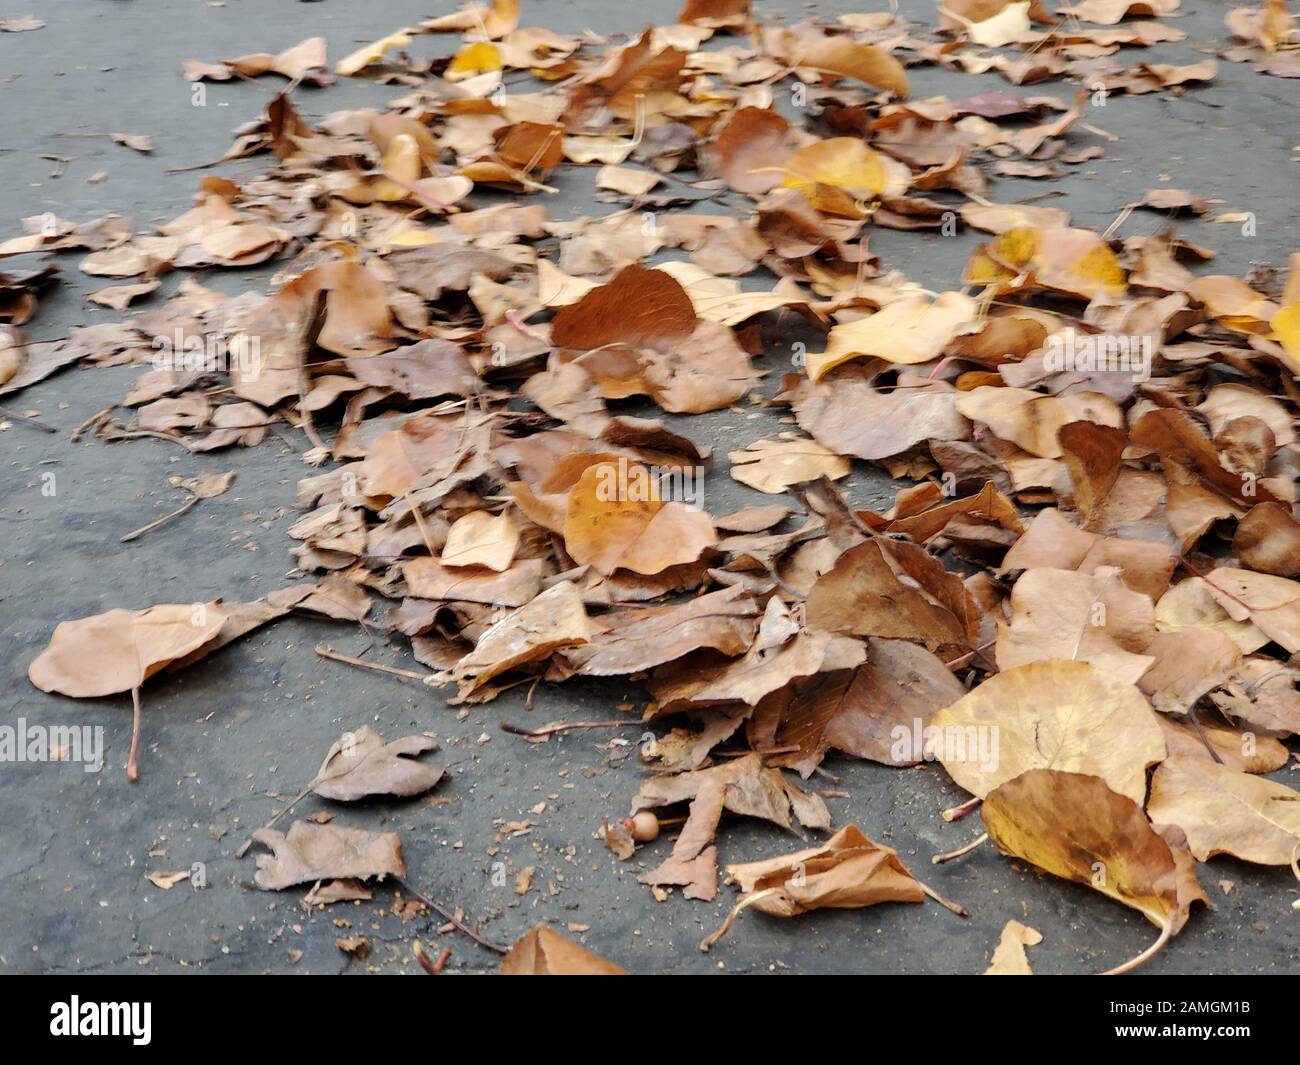 Primo piano di foglie bagnate sulla strada nella San Francisco Bay Area, San Ramon, California, 17 dicembre 2019. Gli incidenti automobilistici sono comuni all'inizio della stagione delle piogge nella regione, in quanto i rischi stradali aumentano con il tempo piovoso. () Foto Stock